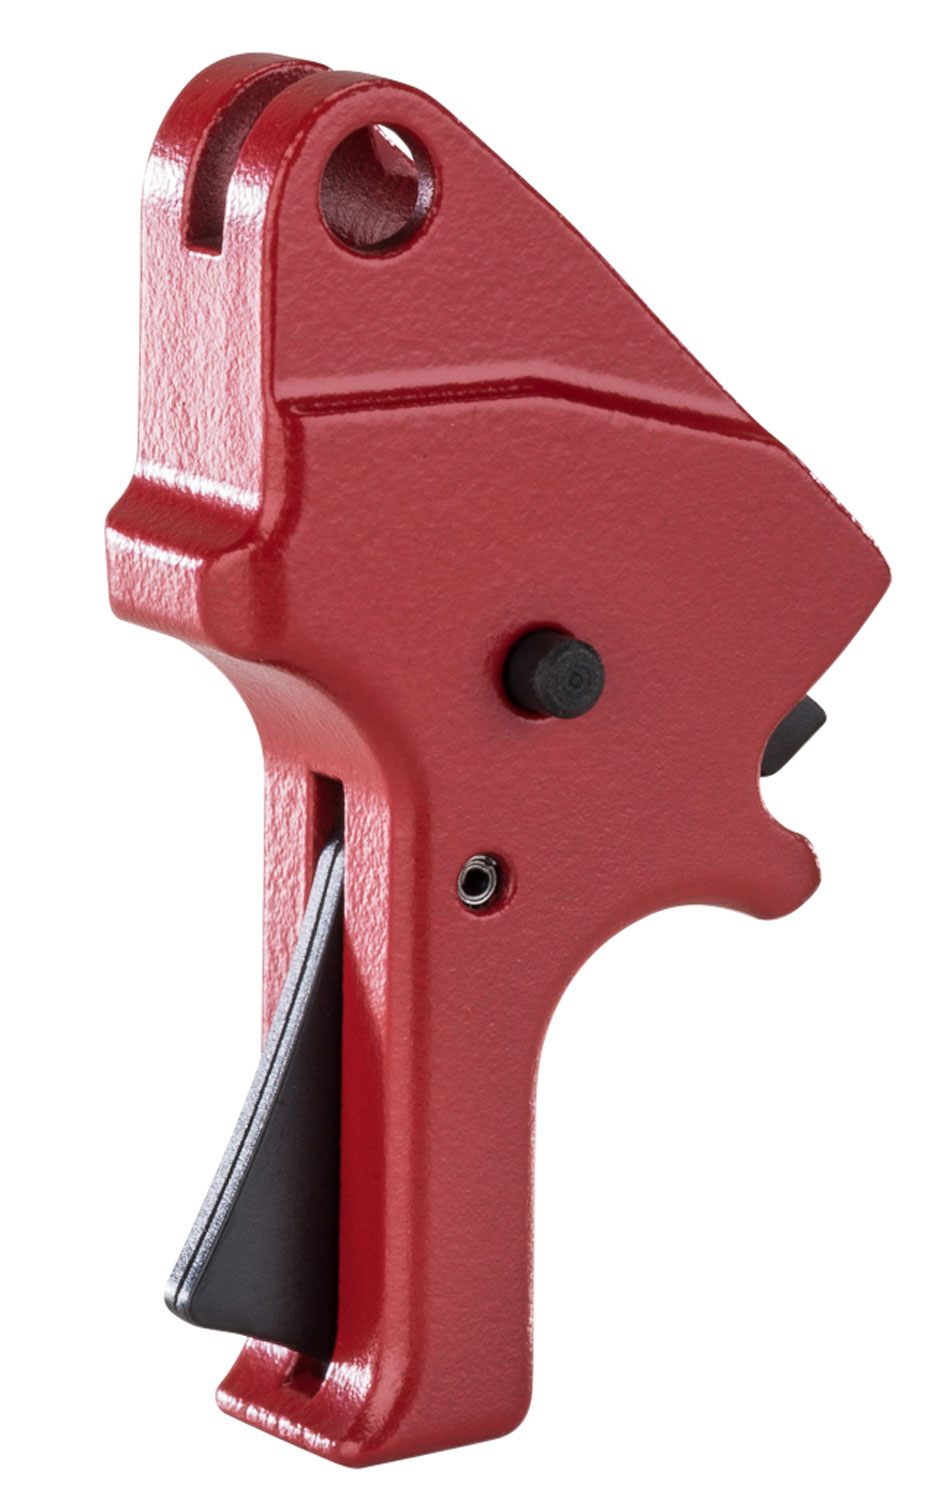 APEX TRIGGER KIT W/FORWARD SET SEAR RED FLAT M&P M2.0